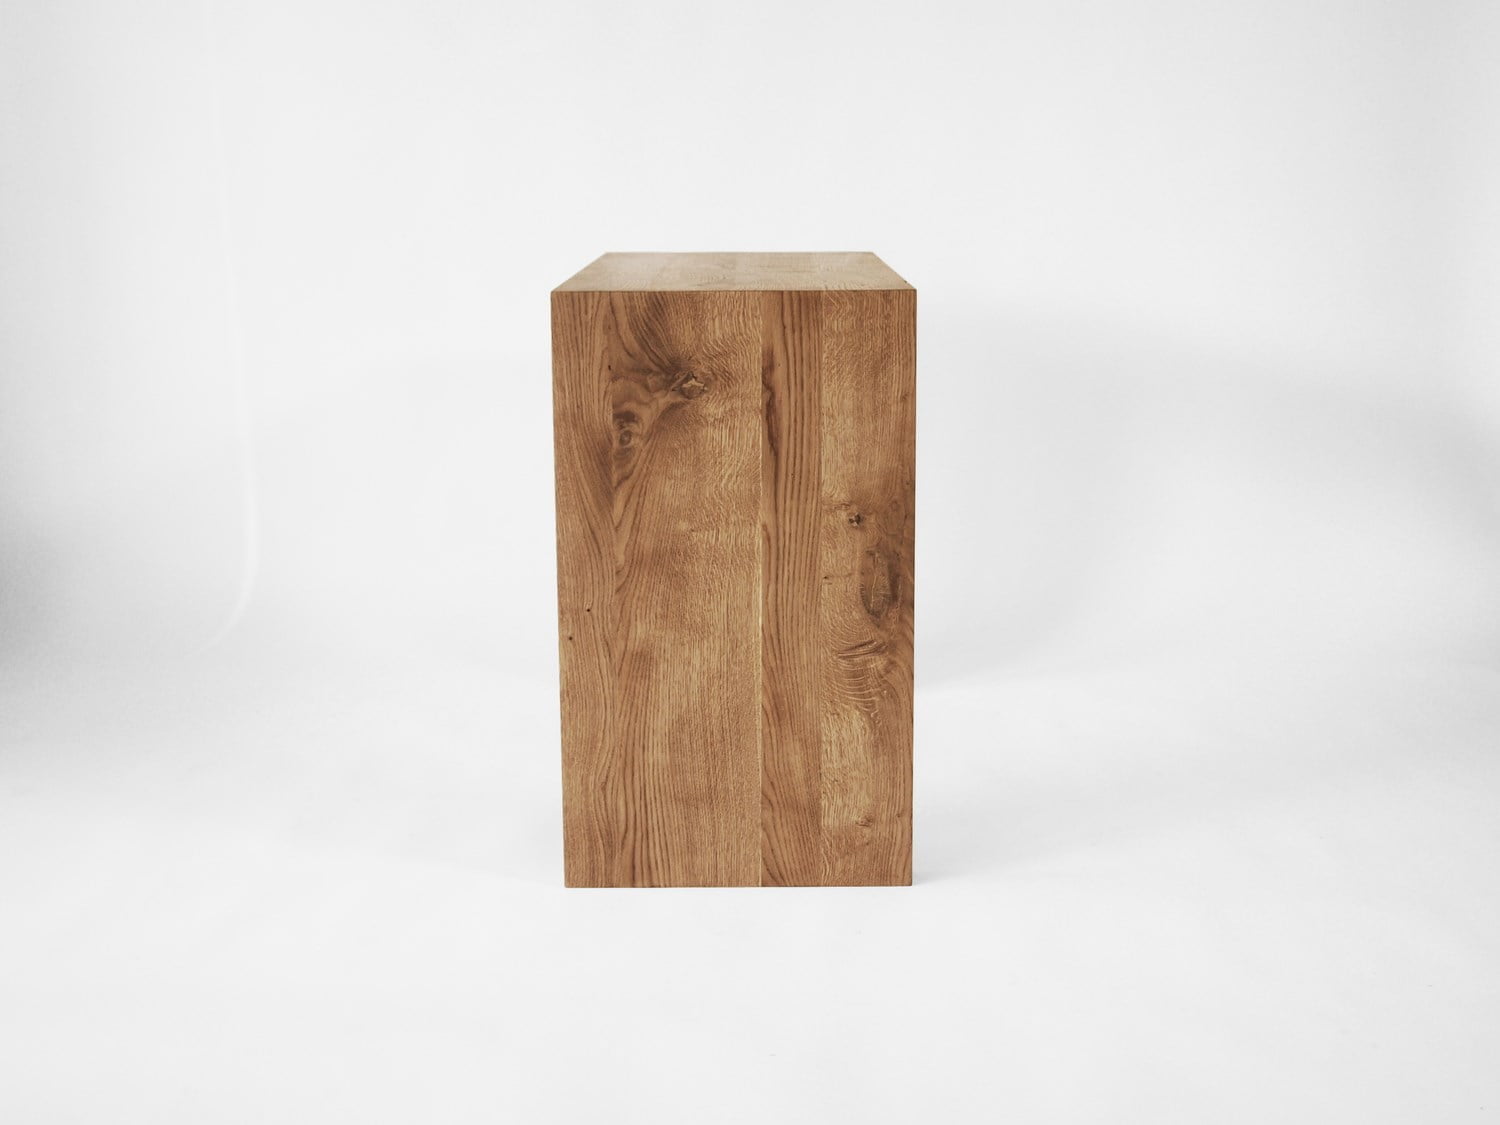 Dębowa prosta konsola z naturalnego litego drewna w minimalistycznym skandynawskim stylu